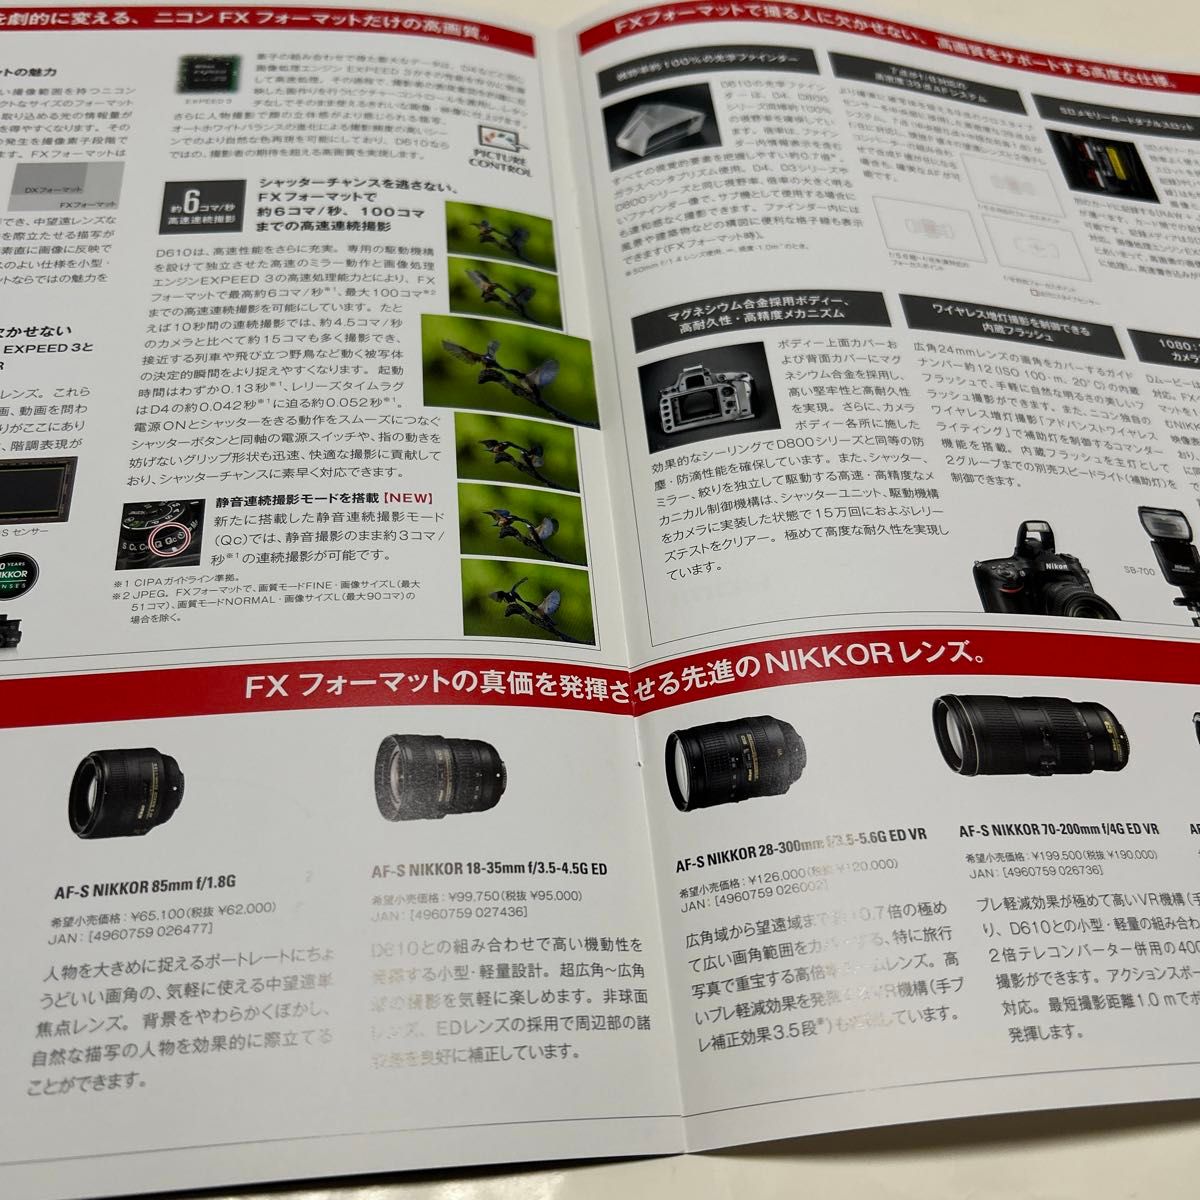 カタログ  Nikon D610 2013/10 P6